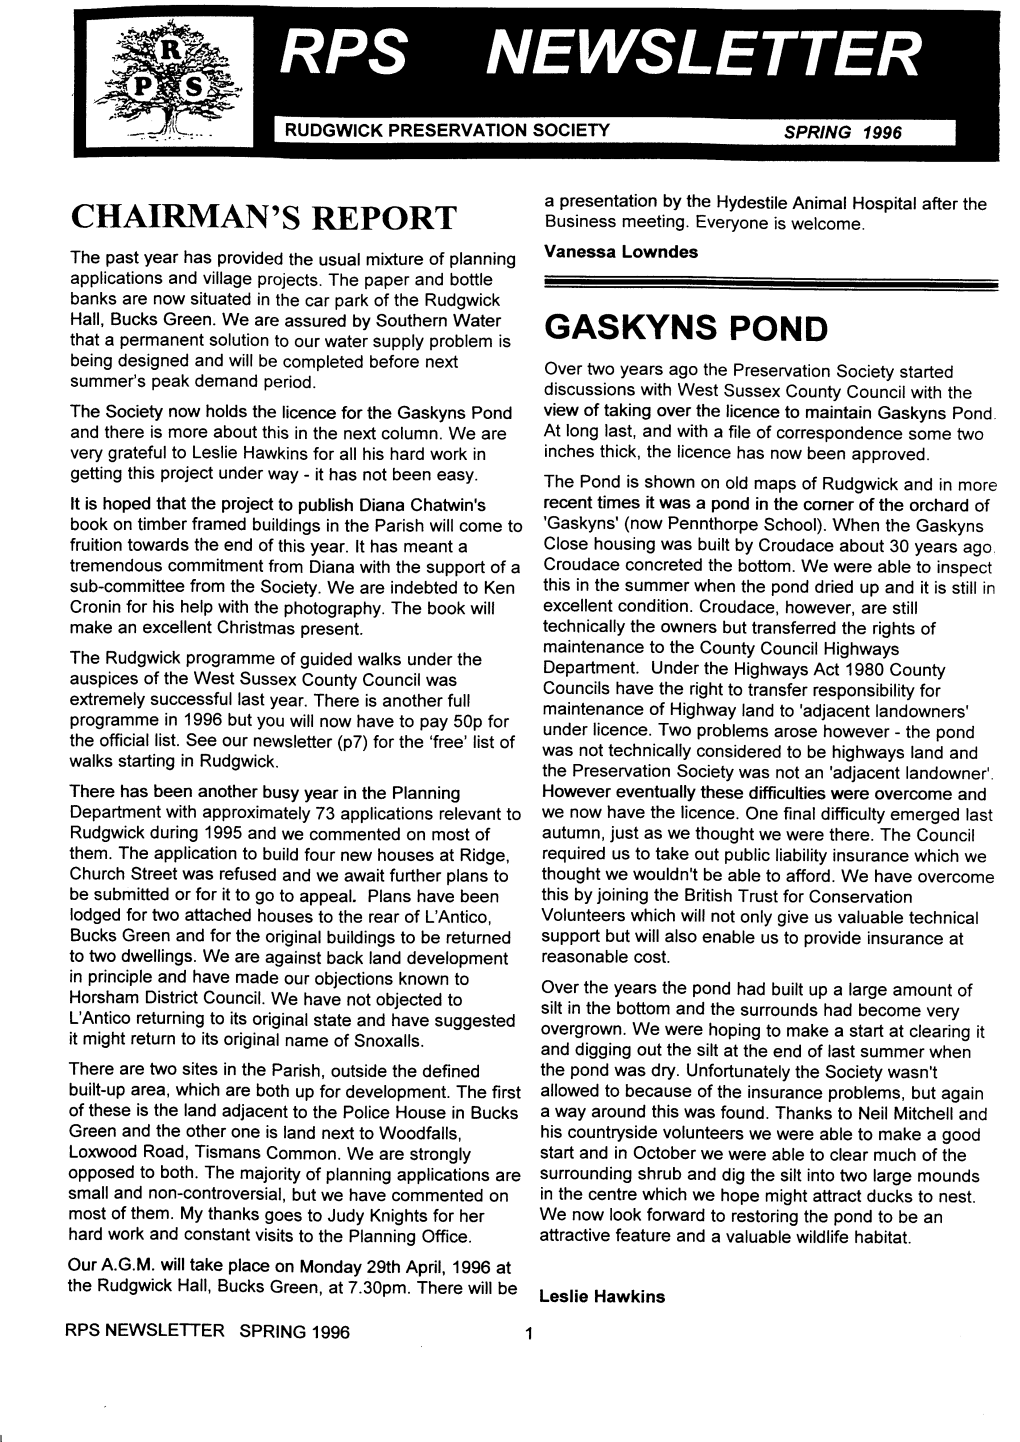 Spring 1996 Newsletter